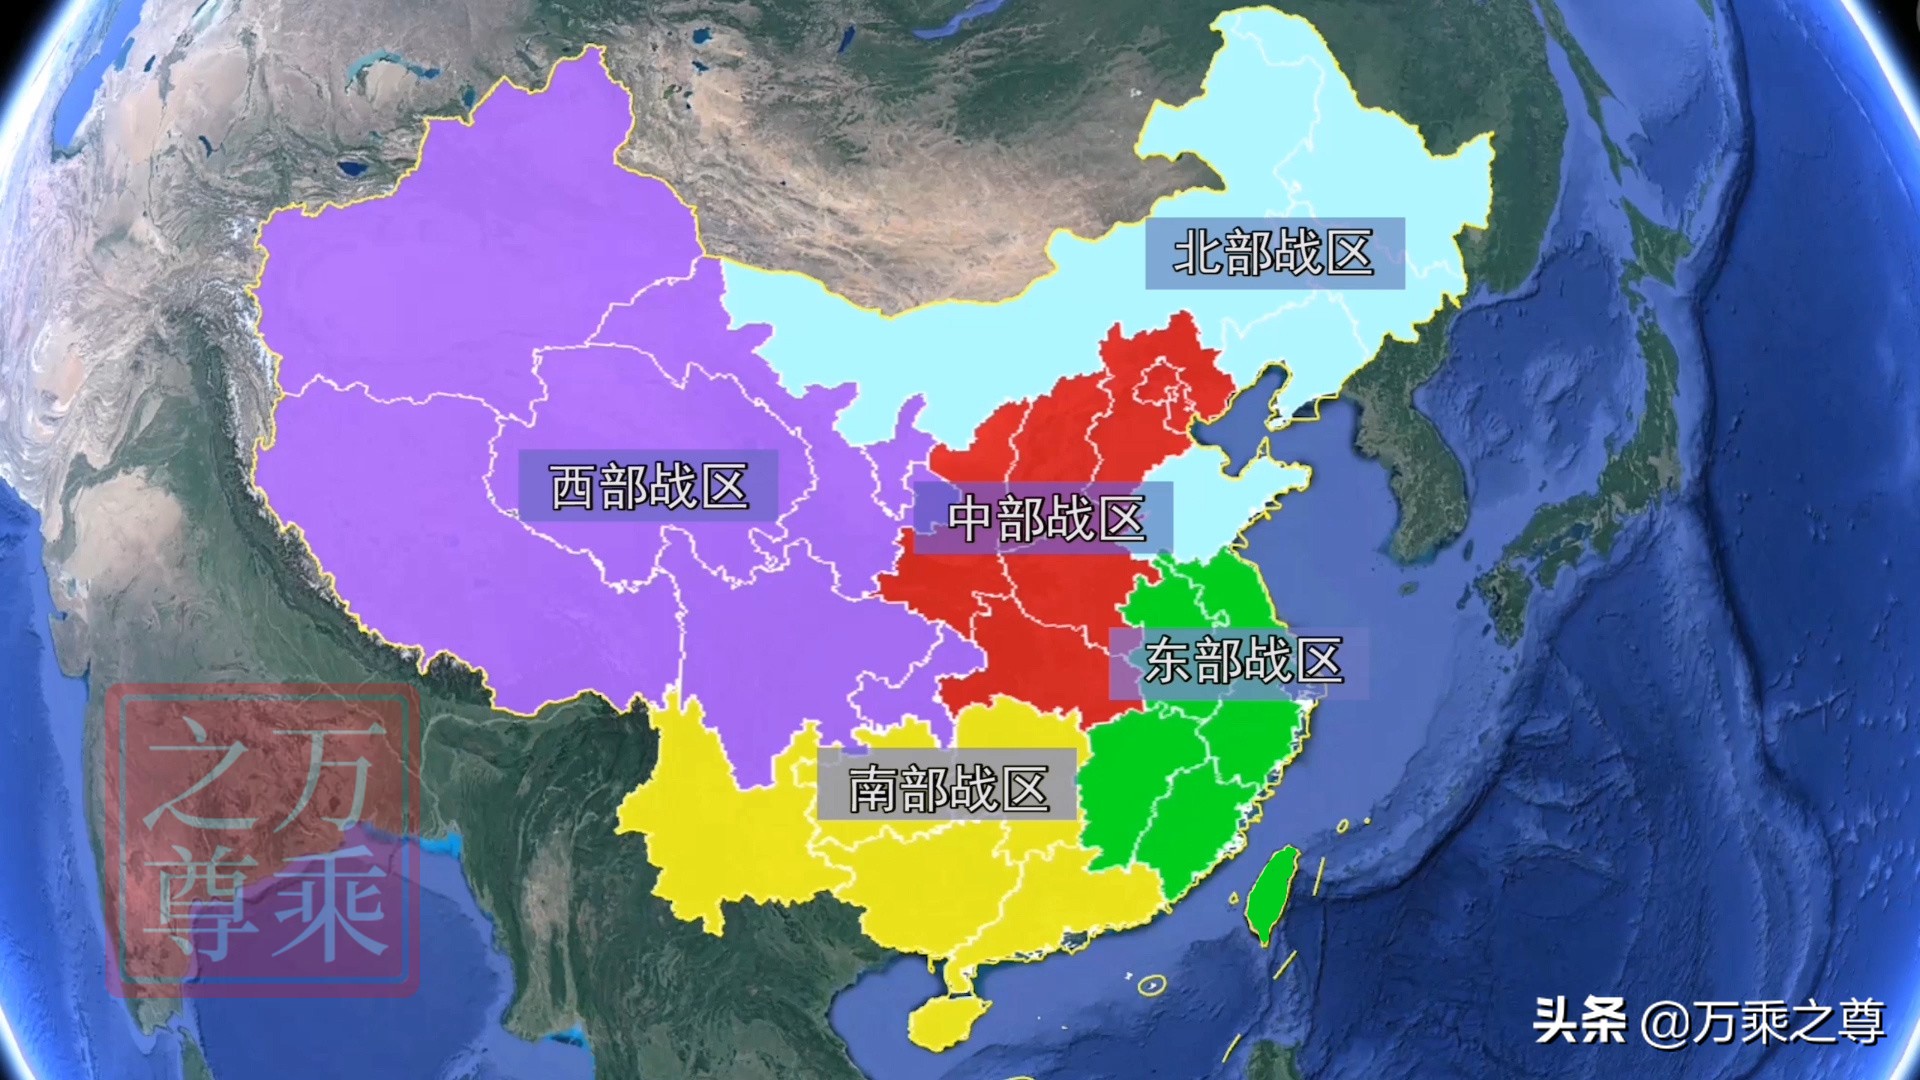 中国五大军区（七大军区变五大战区，是从守卫本土到海外作战的巨大转变）